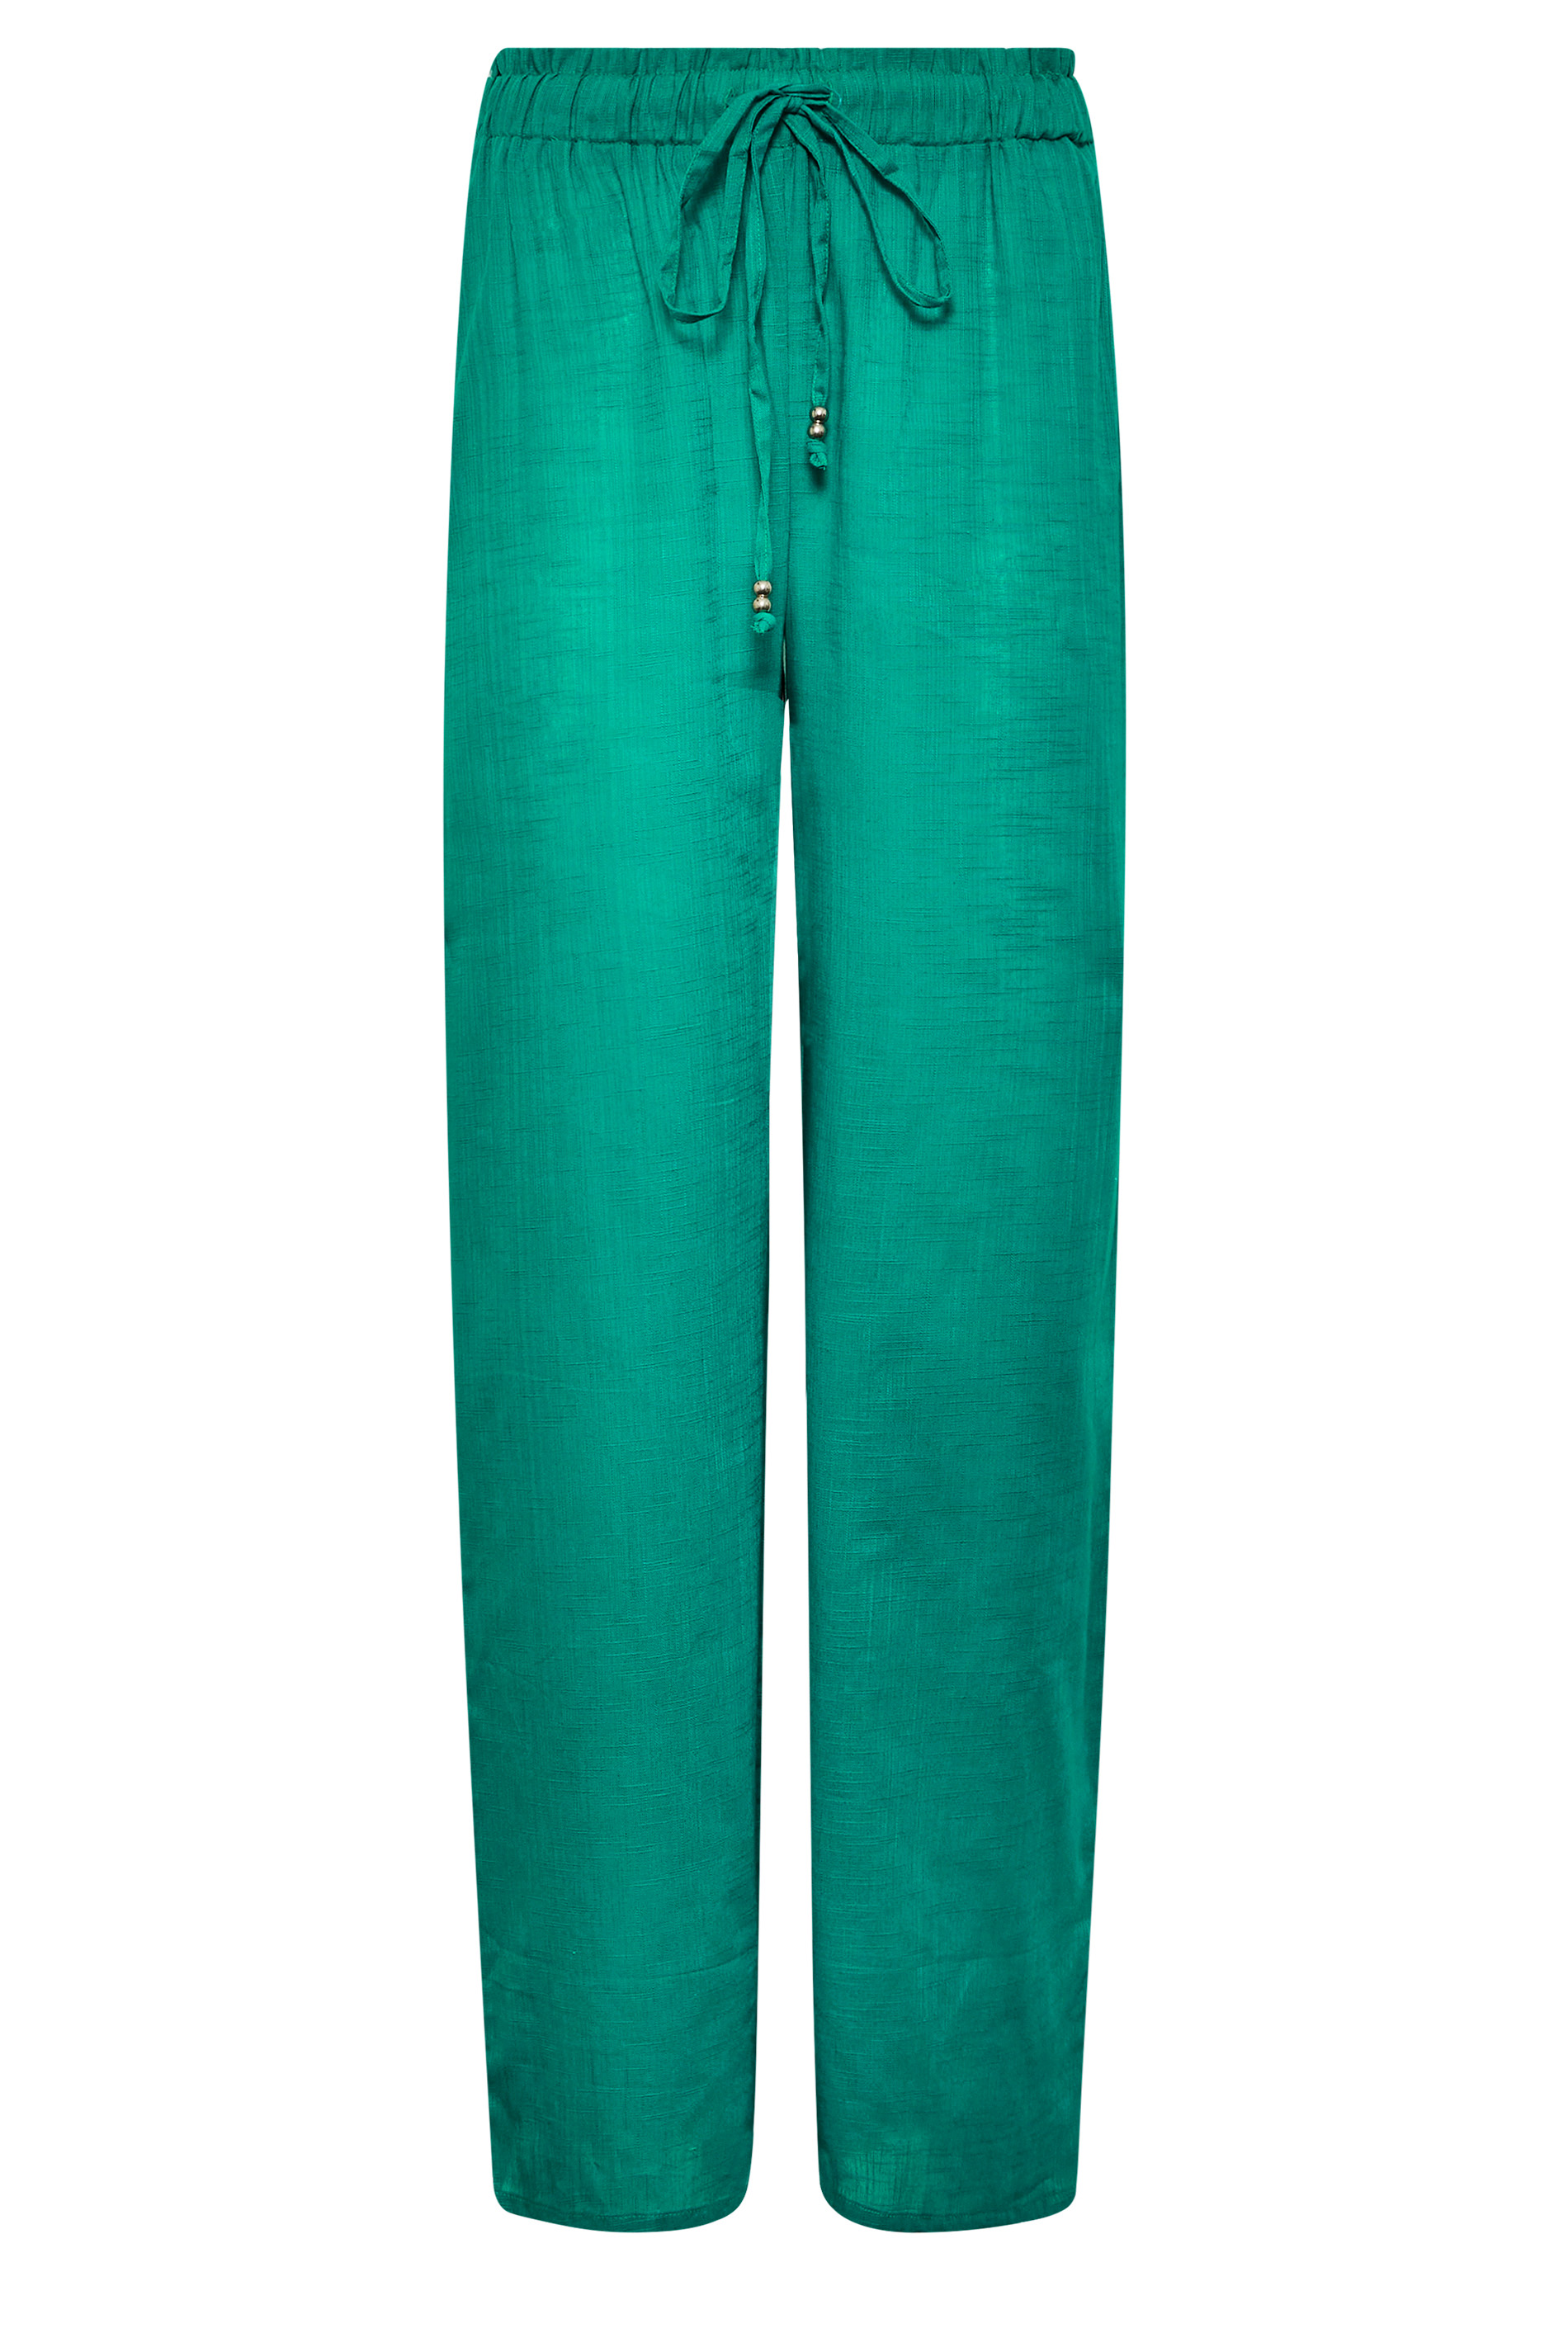 LTS Tall Women's Green Cotton Wide Leg Beach Trousers | Long Tall Sally 2